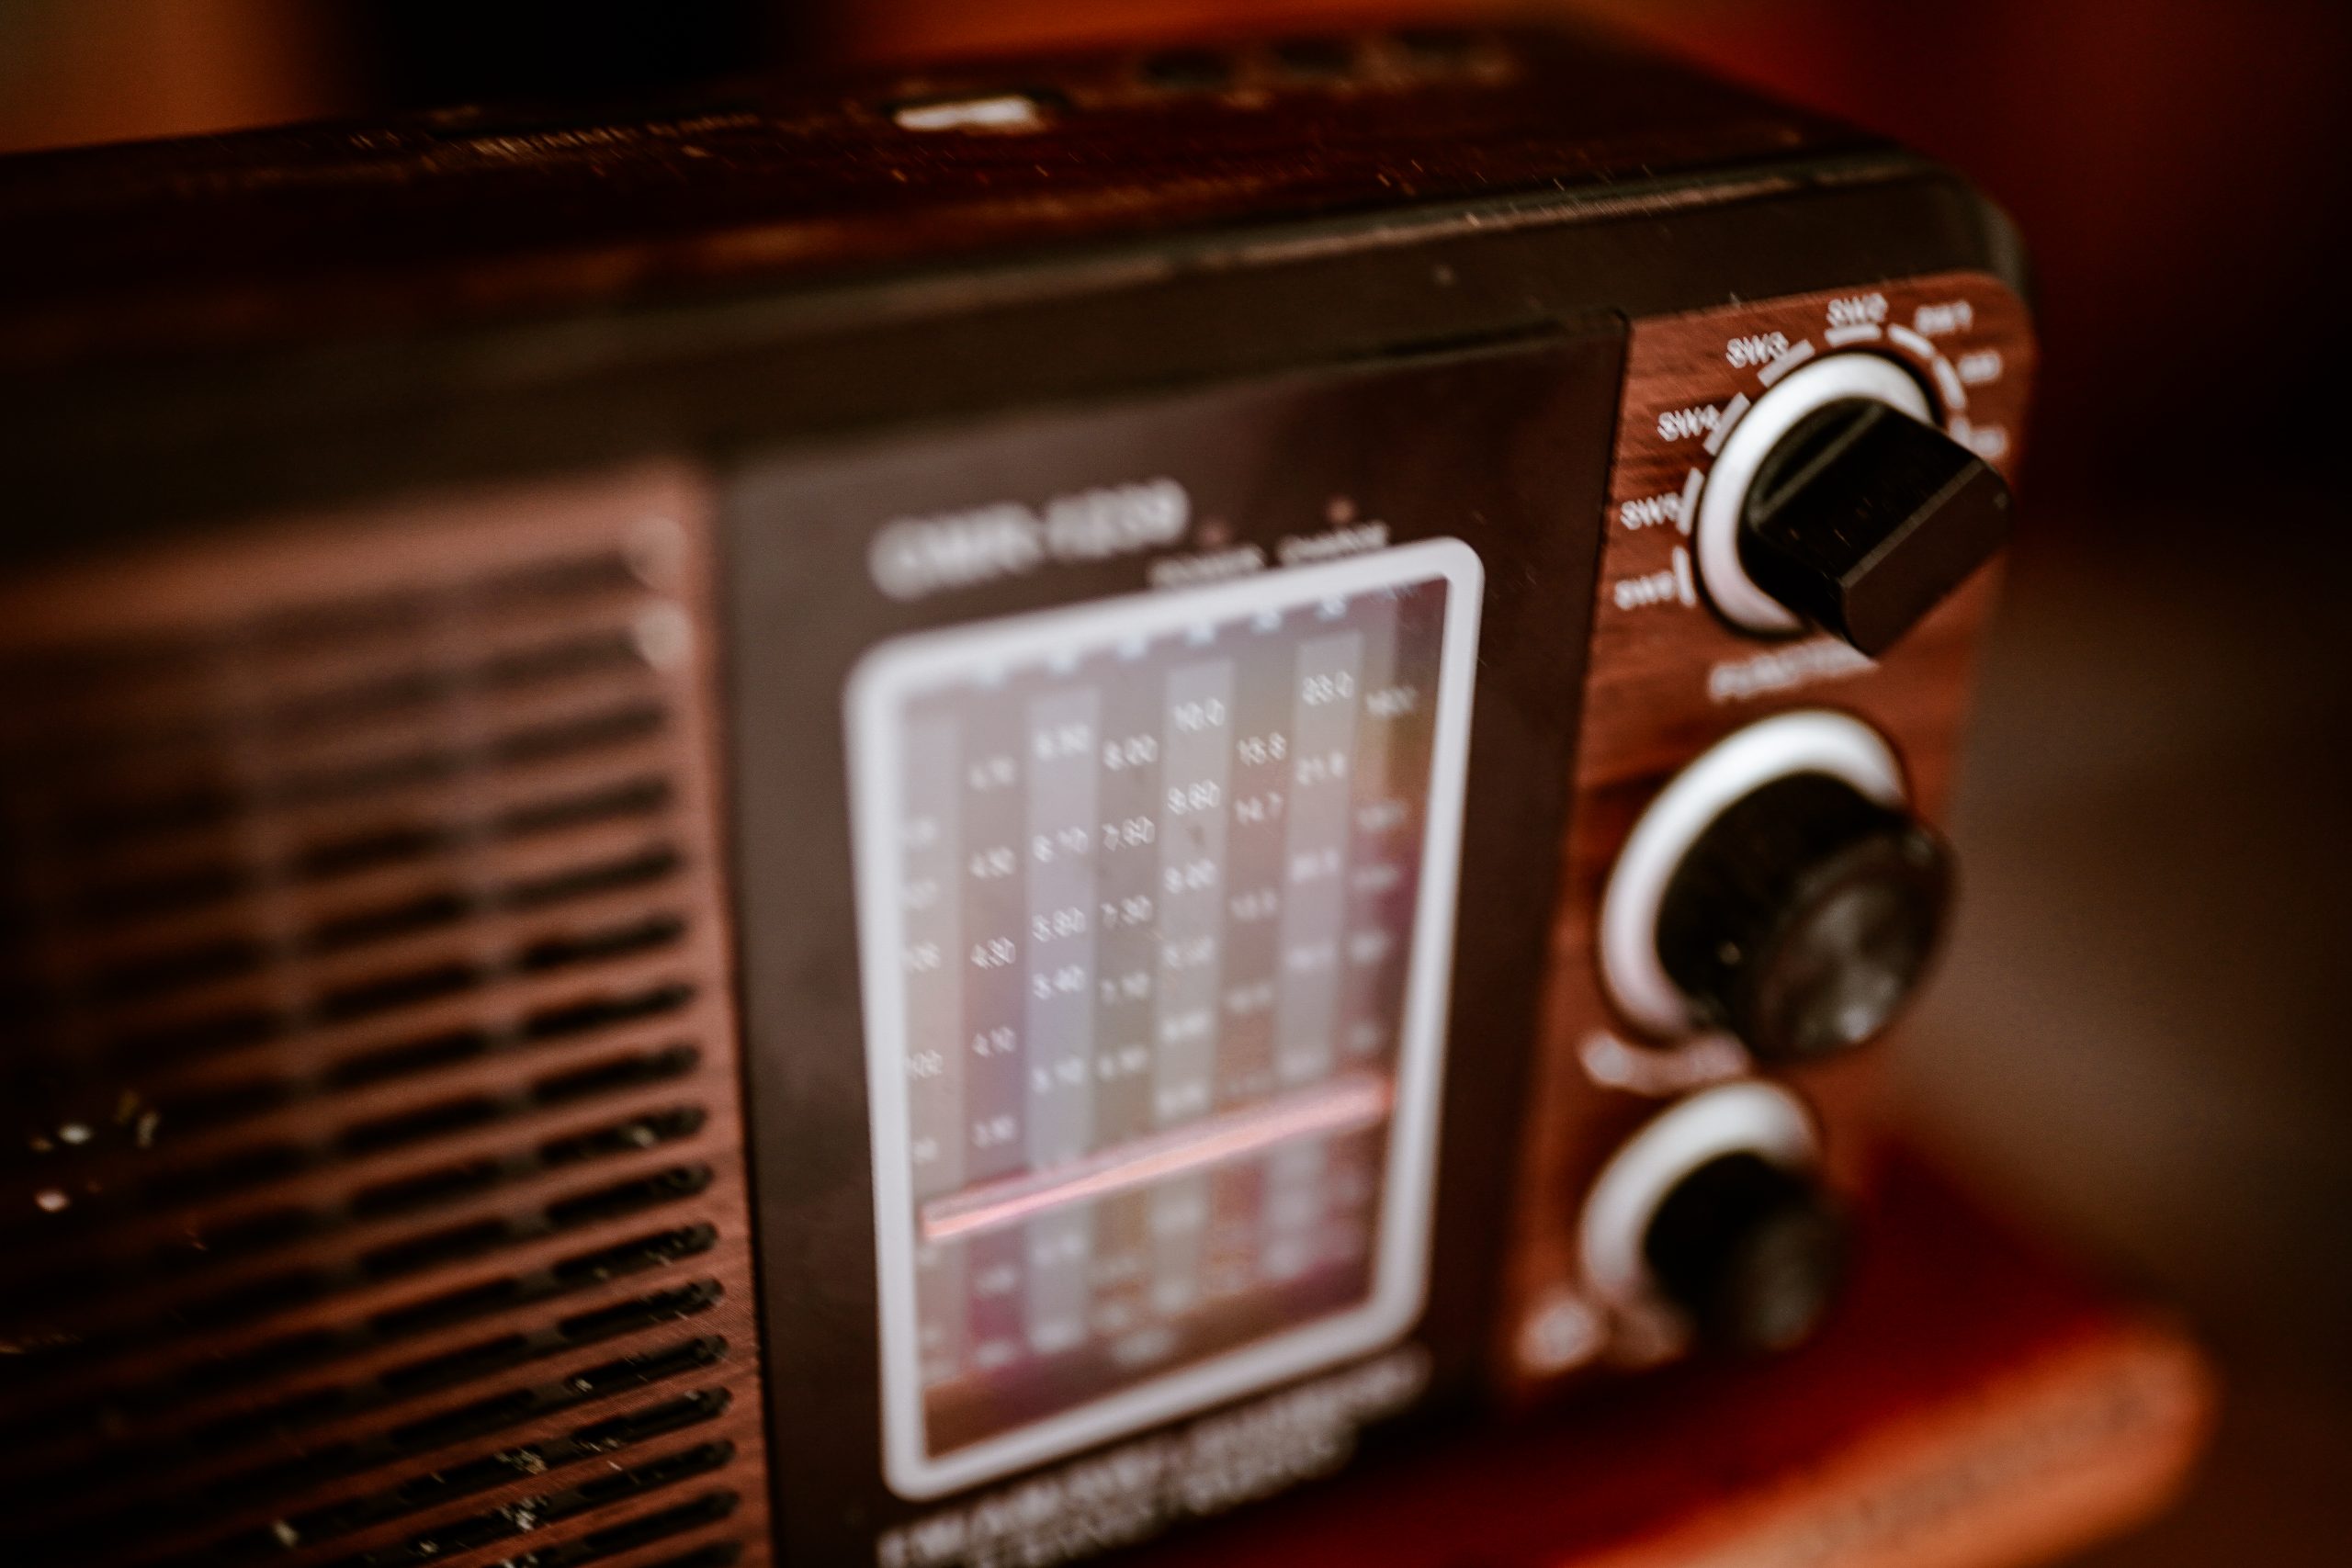 Old vintage radio